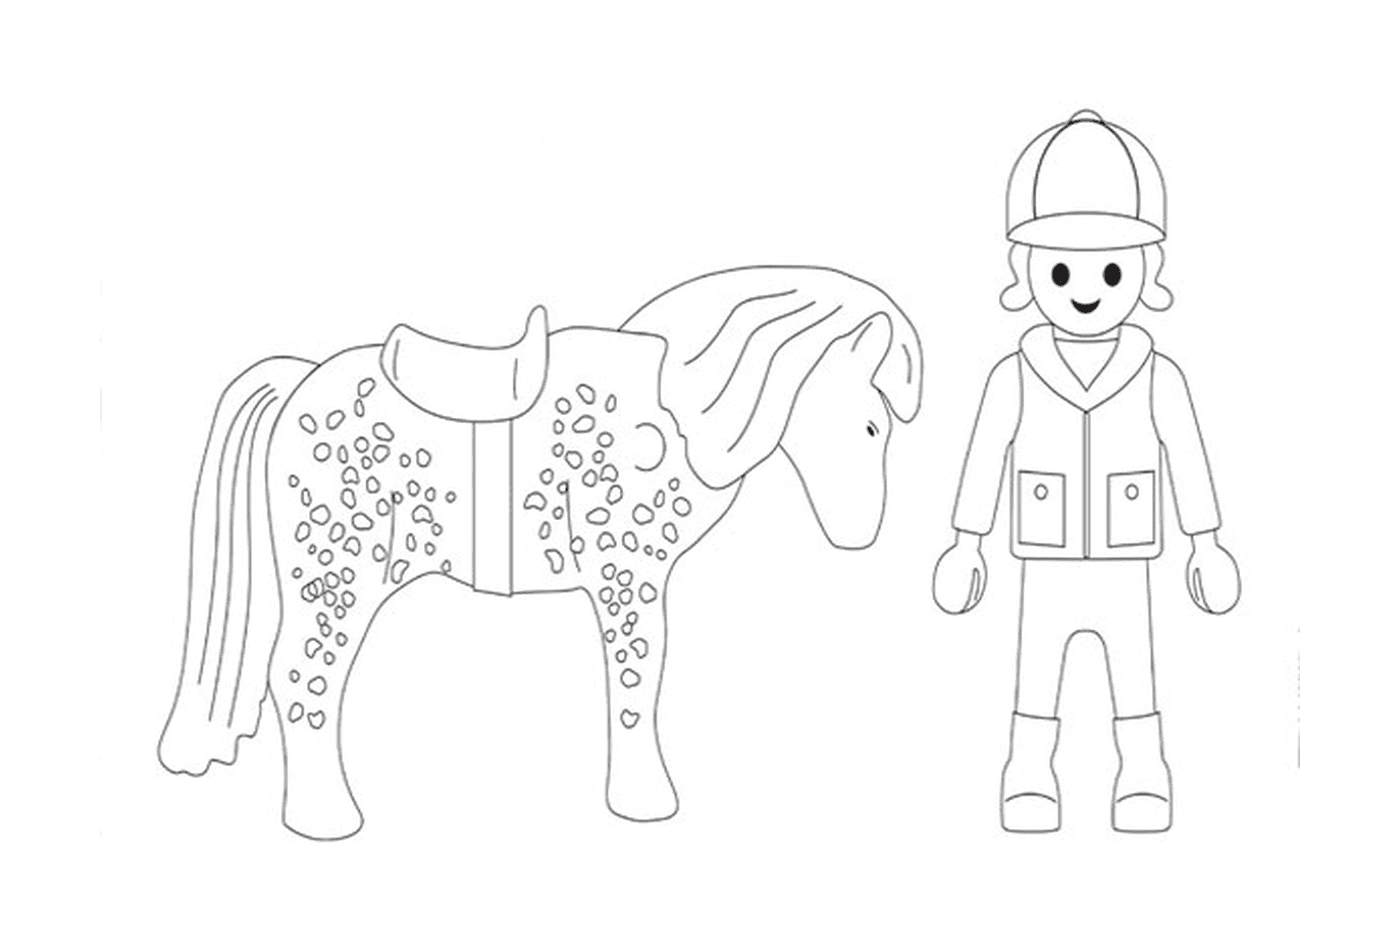  Playmobil Cavallo - Immagine di una persona e di un cavallo 